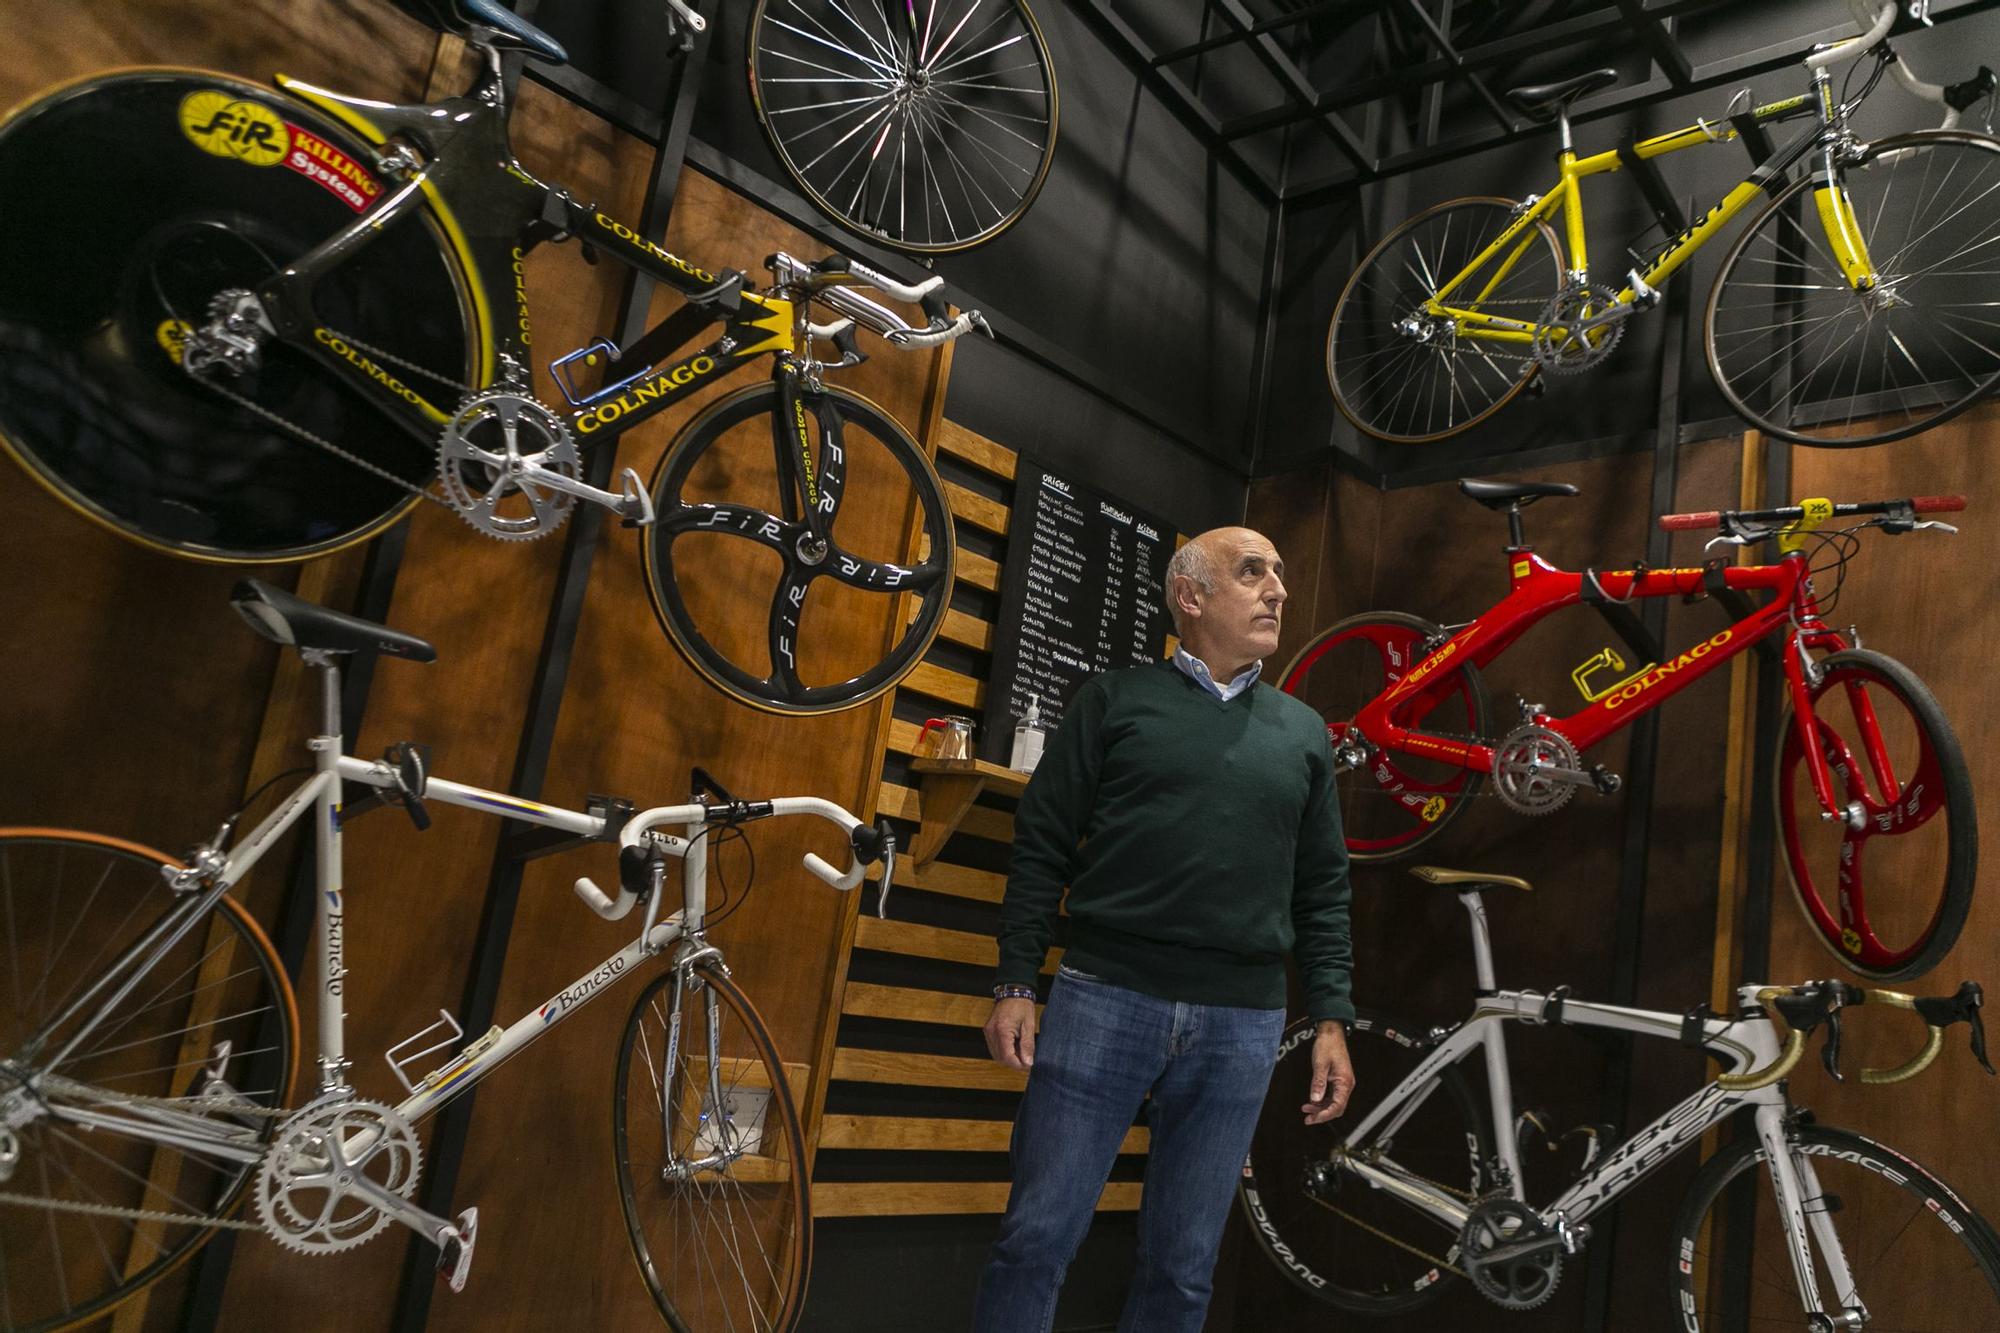 Así es por dentro el tostadero de cafés de Avilés con bicicletas de campeones del mundo